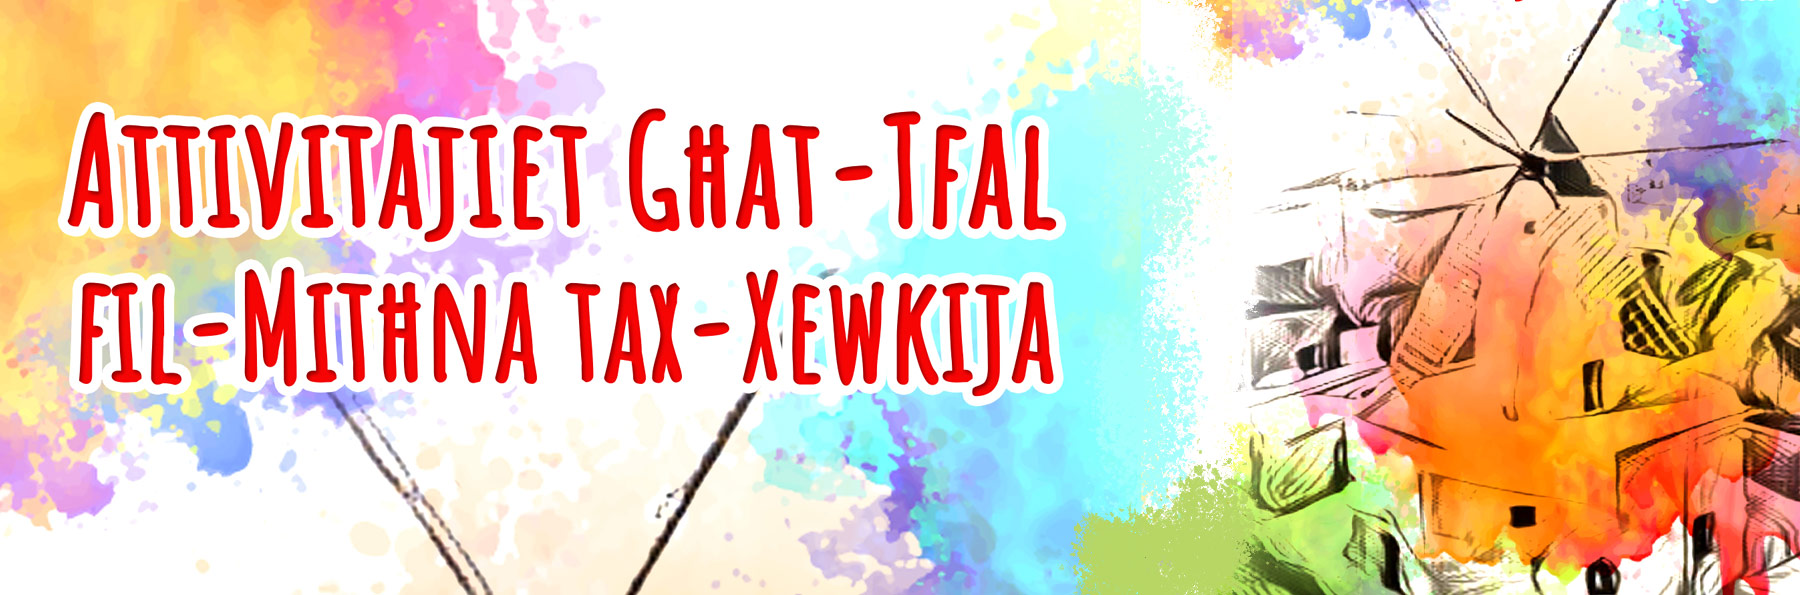 Attivitajiet Għat-Tfal fil-Mitħna tax-Xewkija